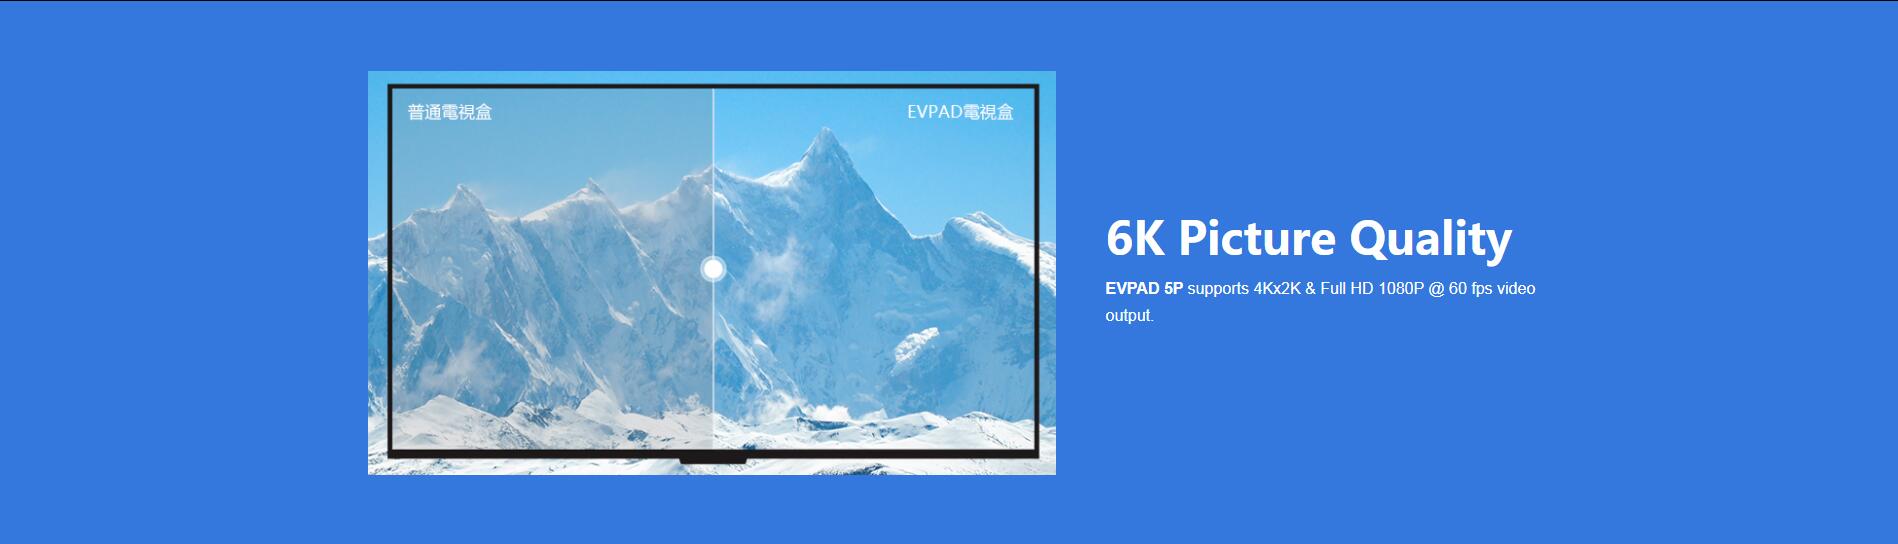 Hộp TV EVPAD 5P - Chất lượng hình ảnh 6K